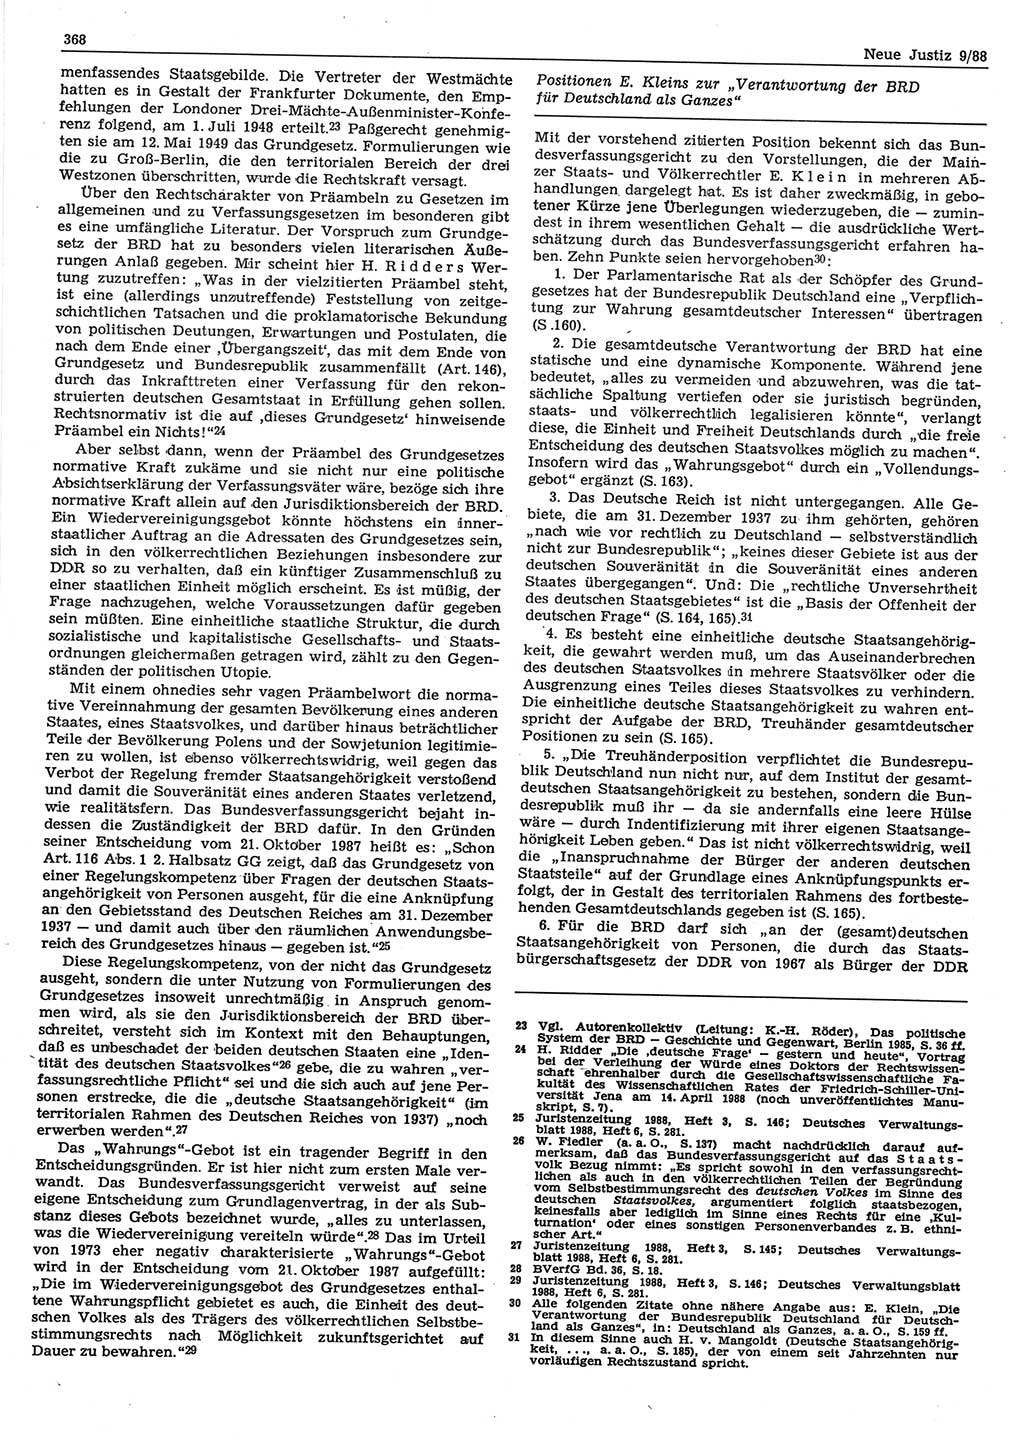 Neue Justiz (NJ), Zeitschrift für sozialistisches Recht und Gesetzlichkeit [Deutsche Demokratische Republik (DDR)], 42. Jahrgang 1988, Seite 368 (NJ DDR 1988, S. 368)